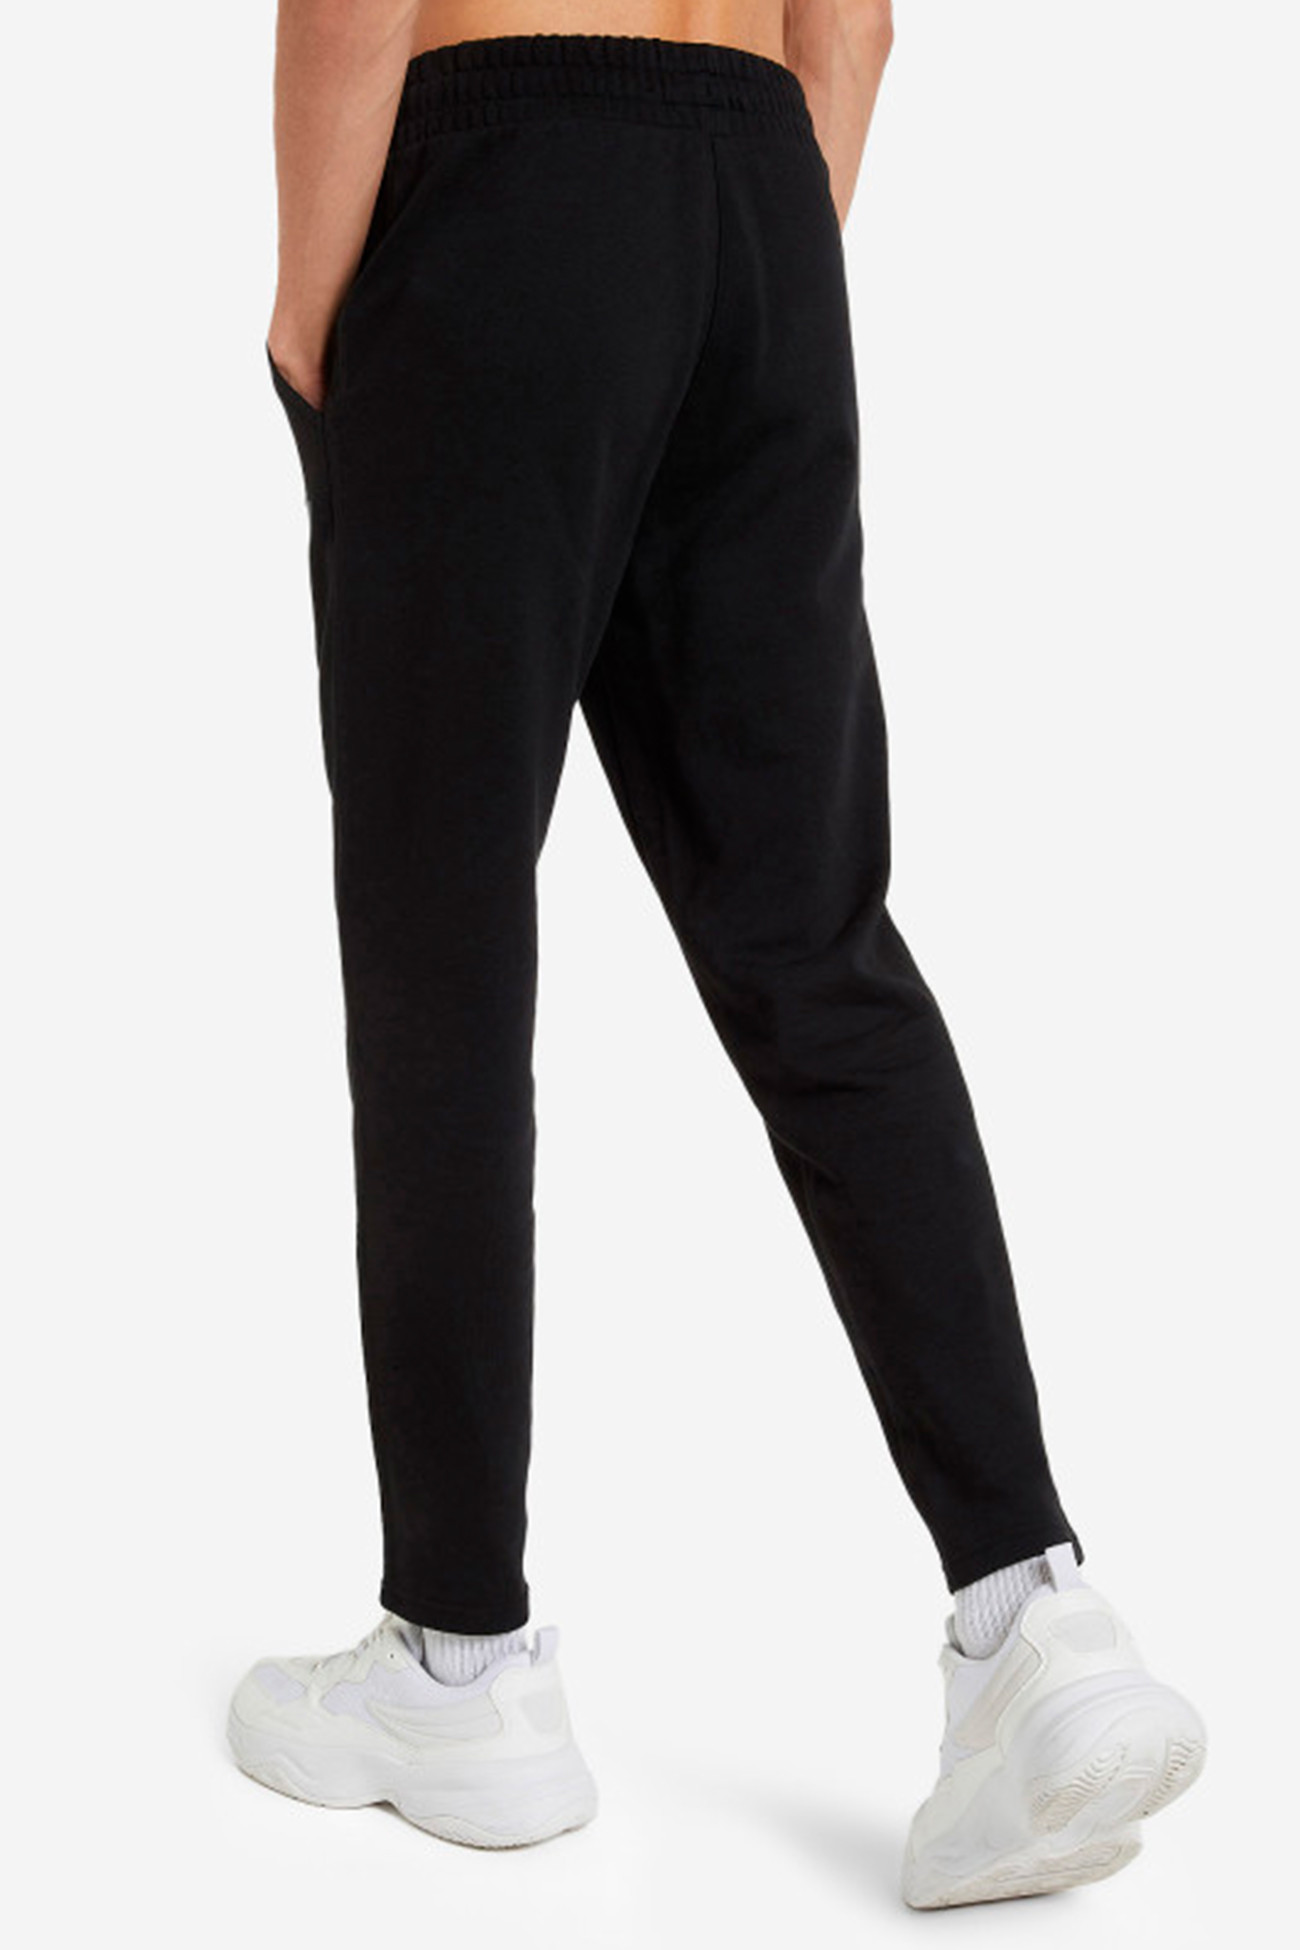 FILA sporty pants for women, 14,45 €